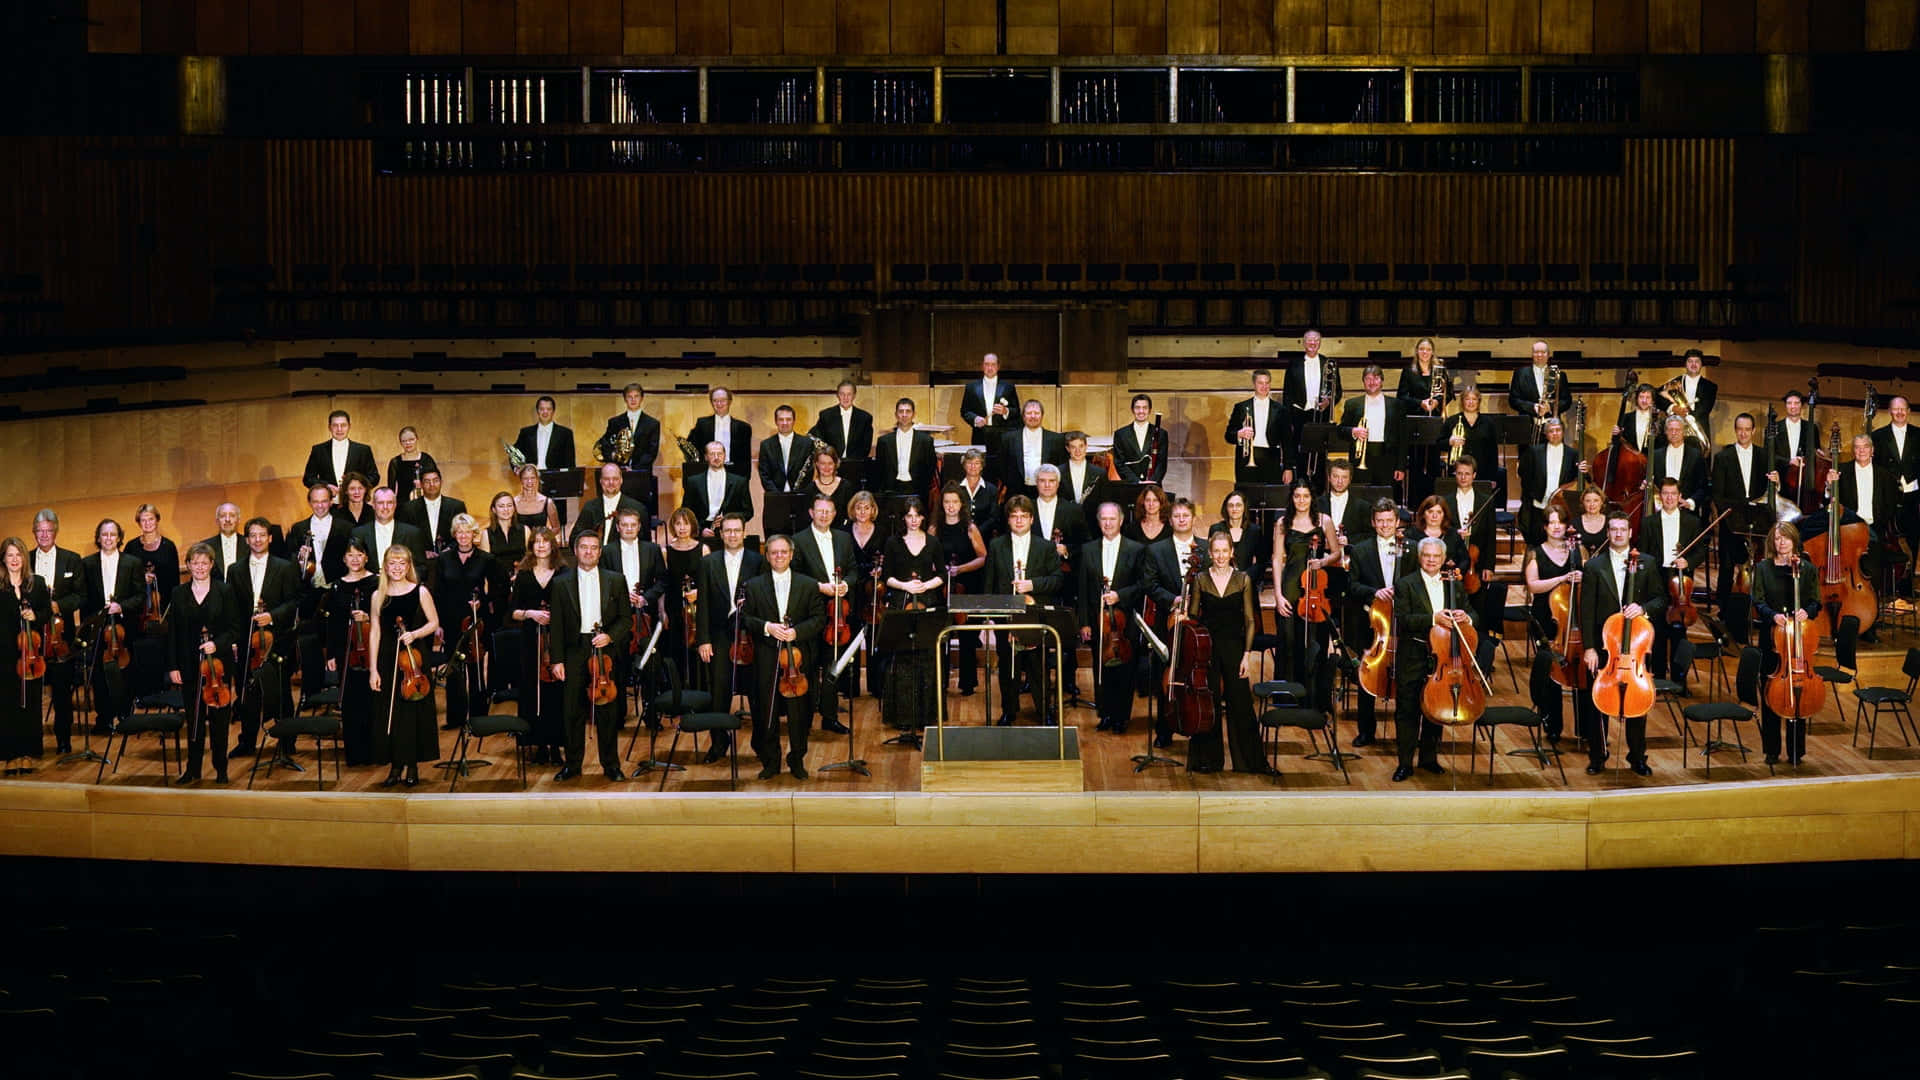 Fundode Tela Da Fase Do Concerto Da Orquestra Filarmônica De Londres.